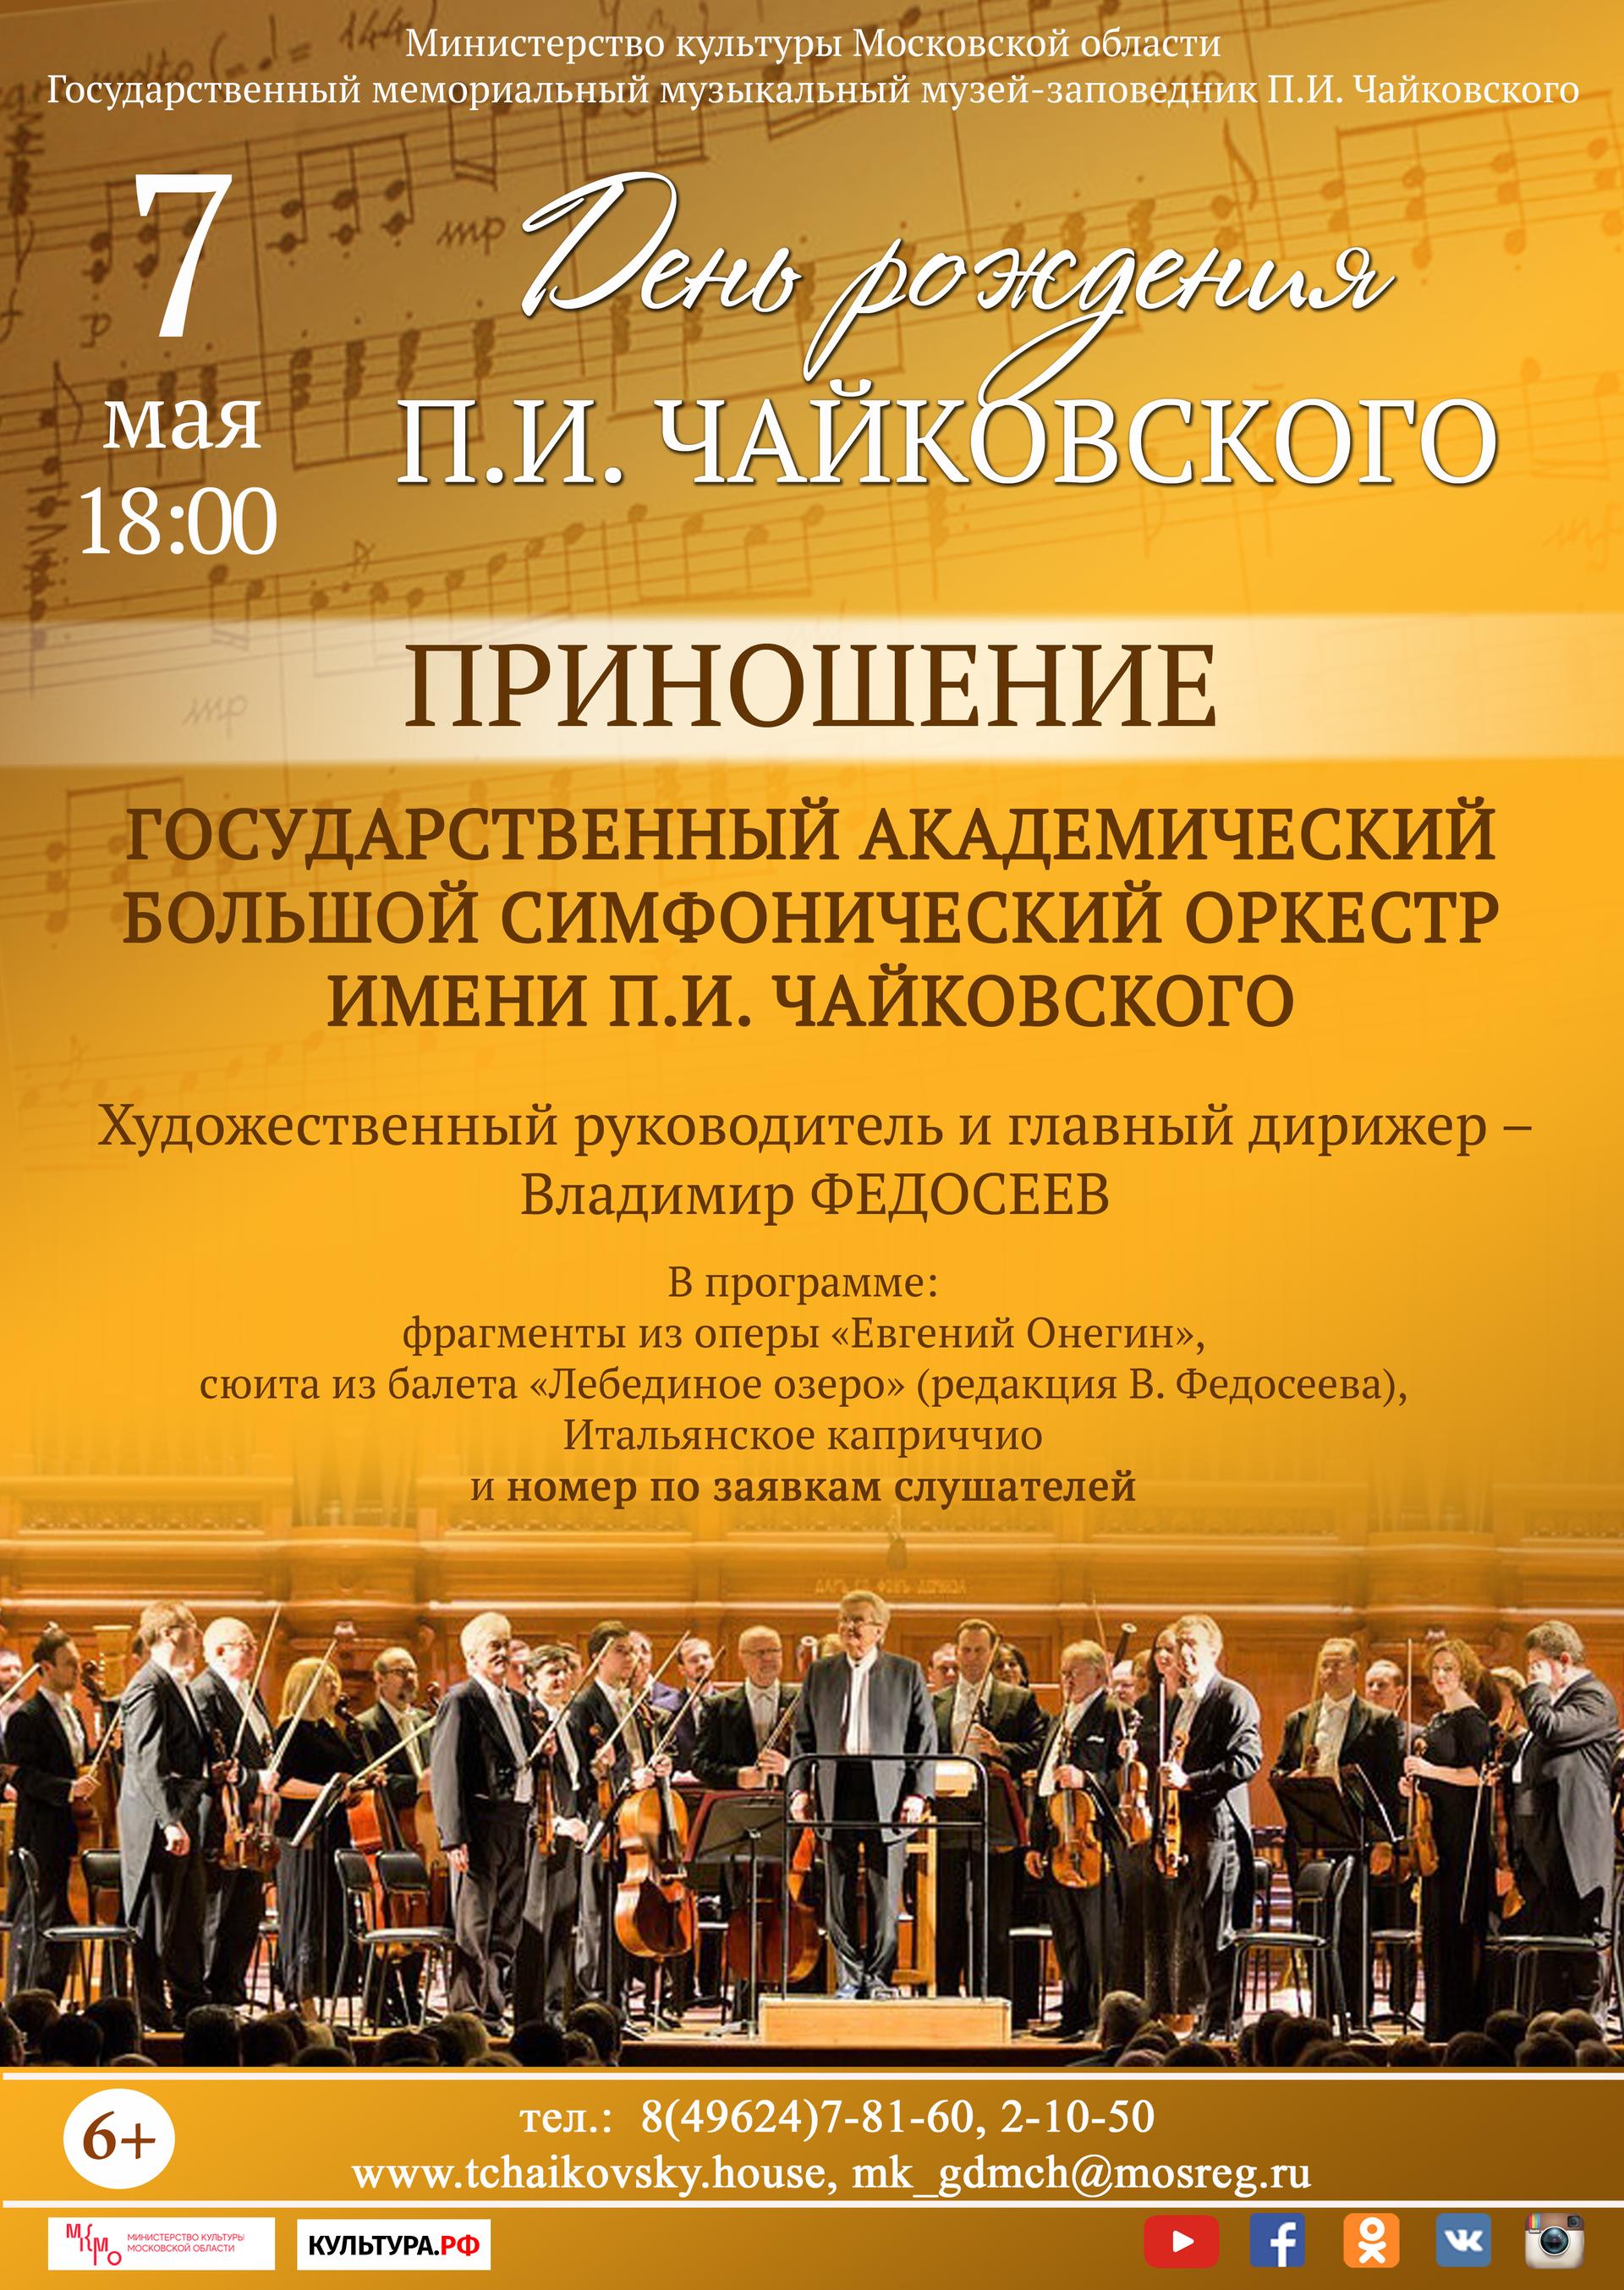 Концерт Большого симфонического оркестра имени П.И. Чайковского